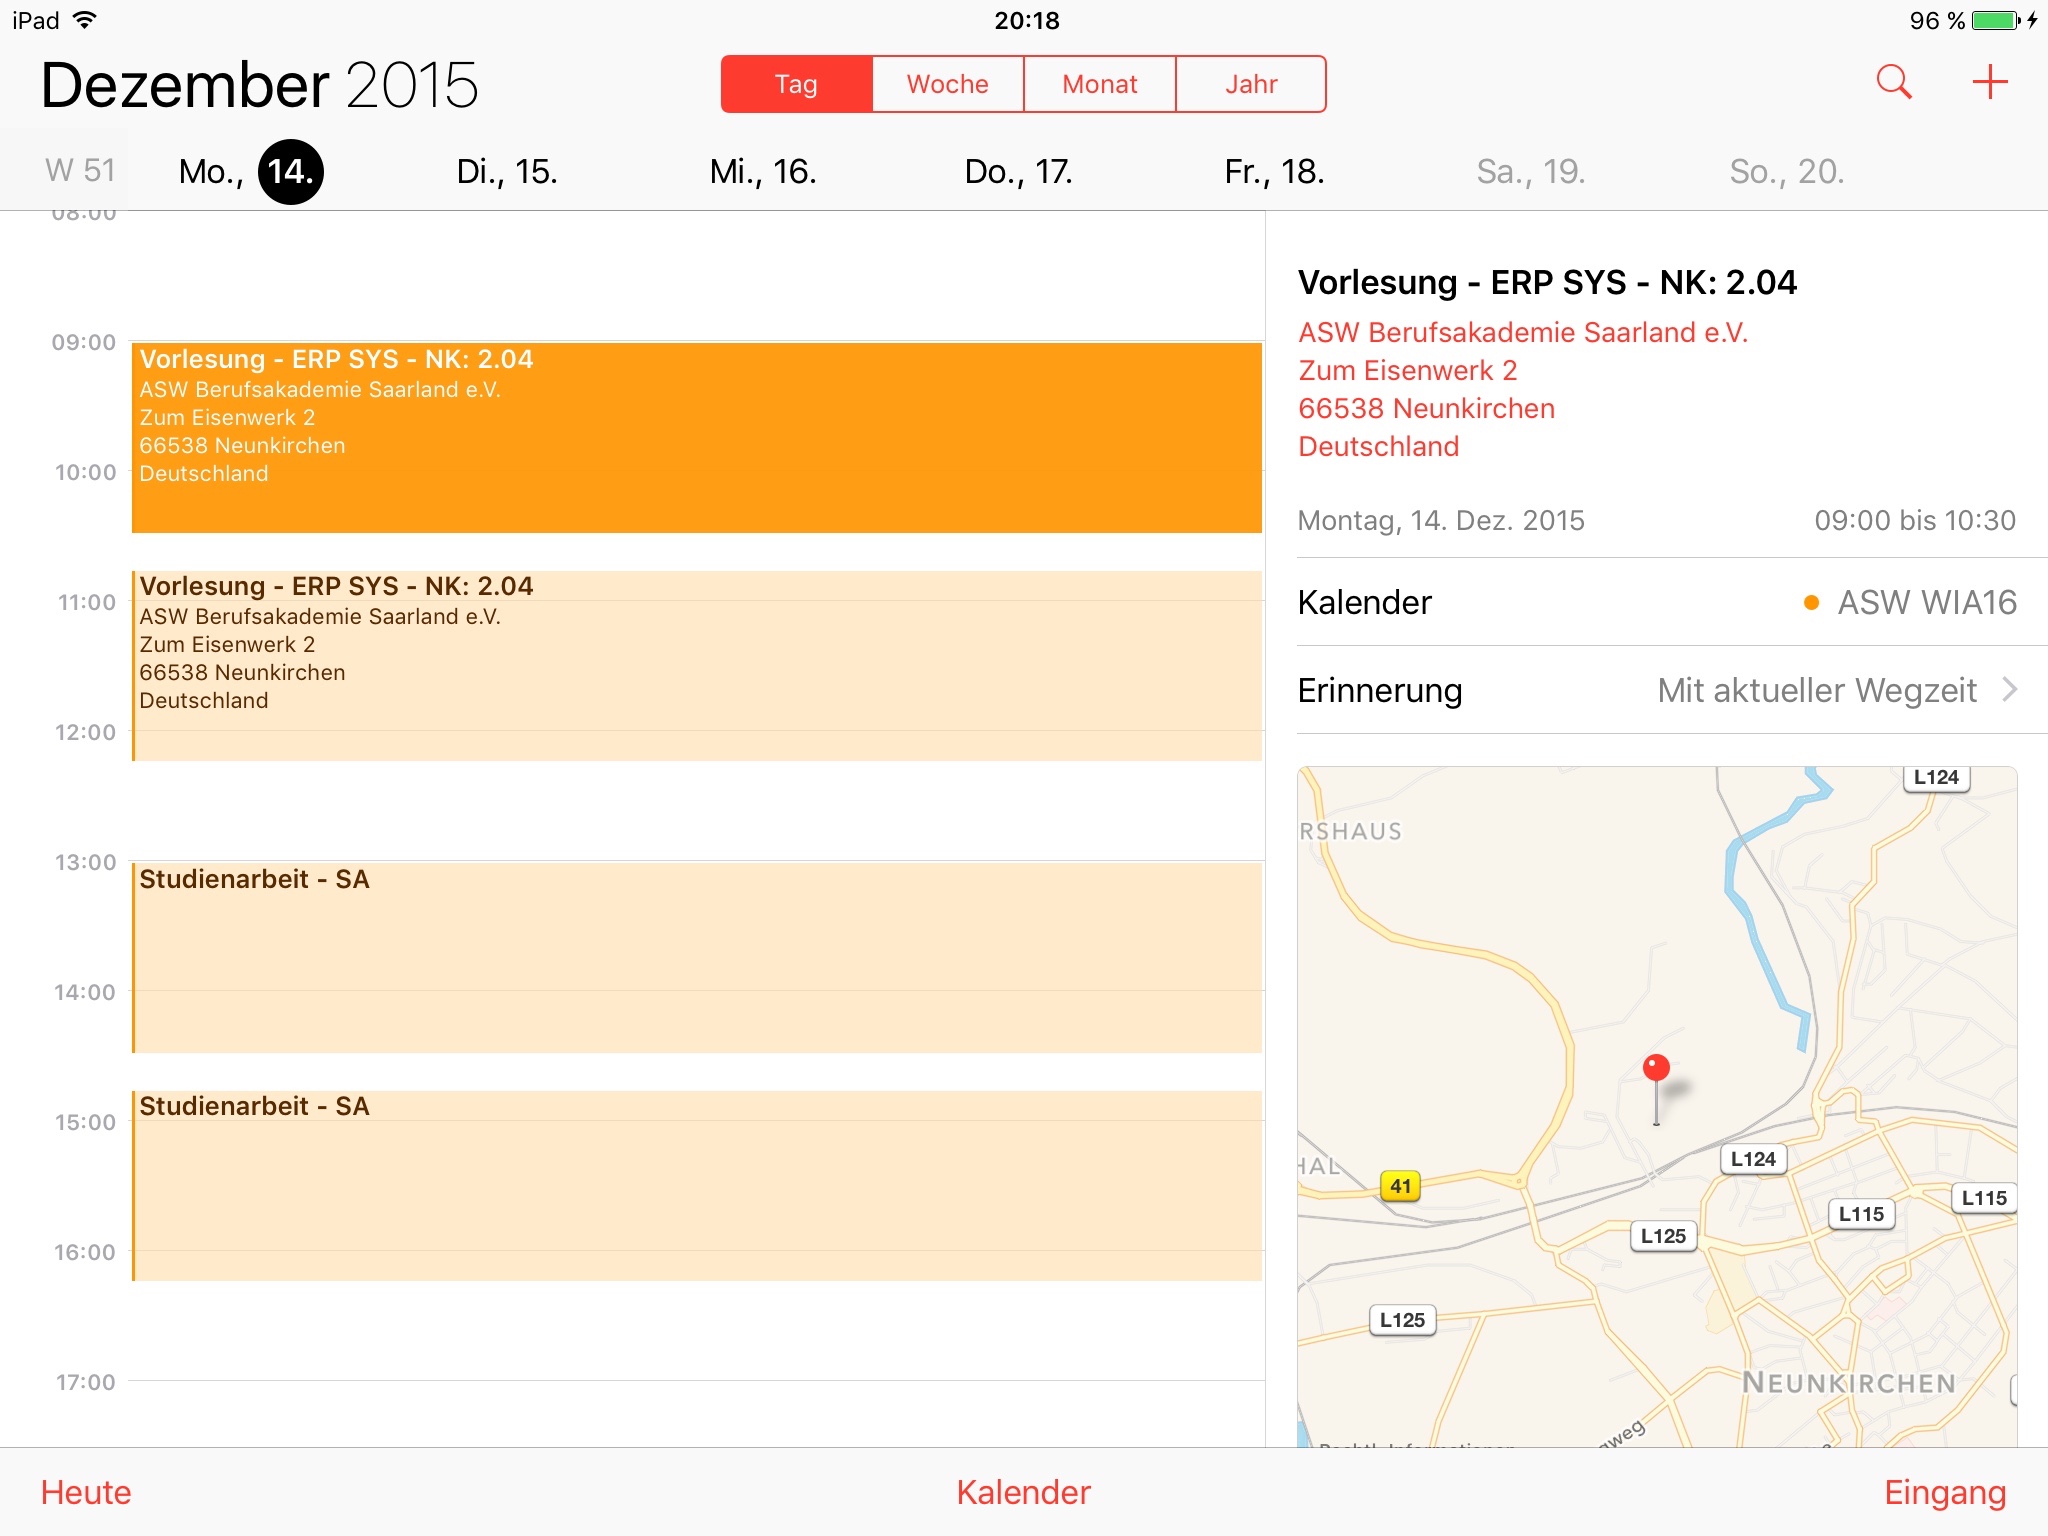 Vom iPad abonnierter rich ics Kalender mit Routen-/ und Verkehrsinformationen